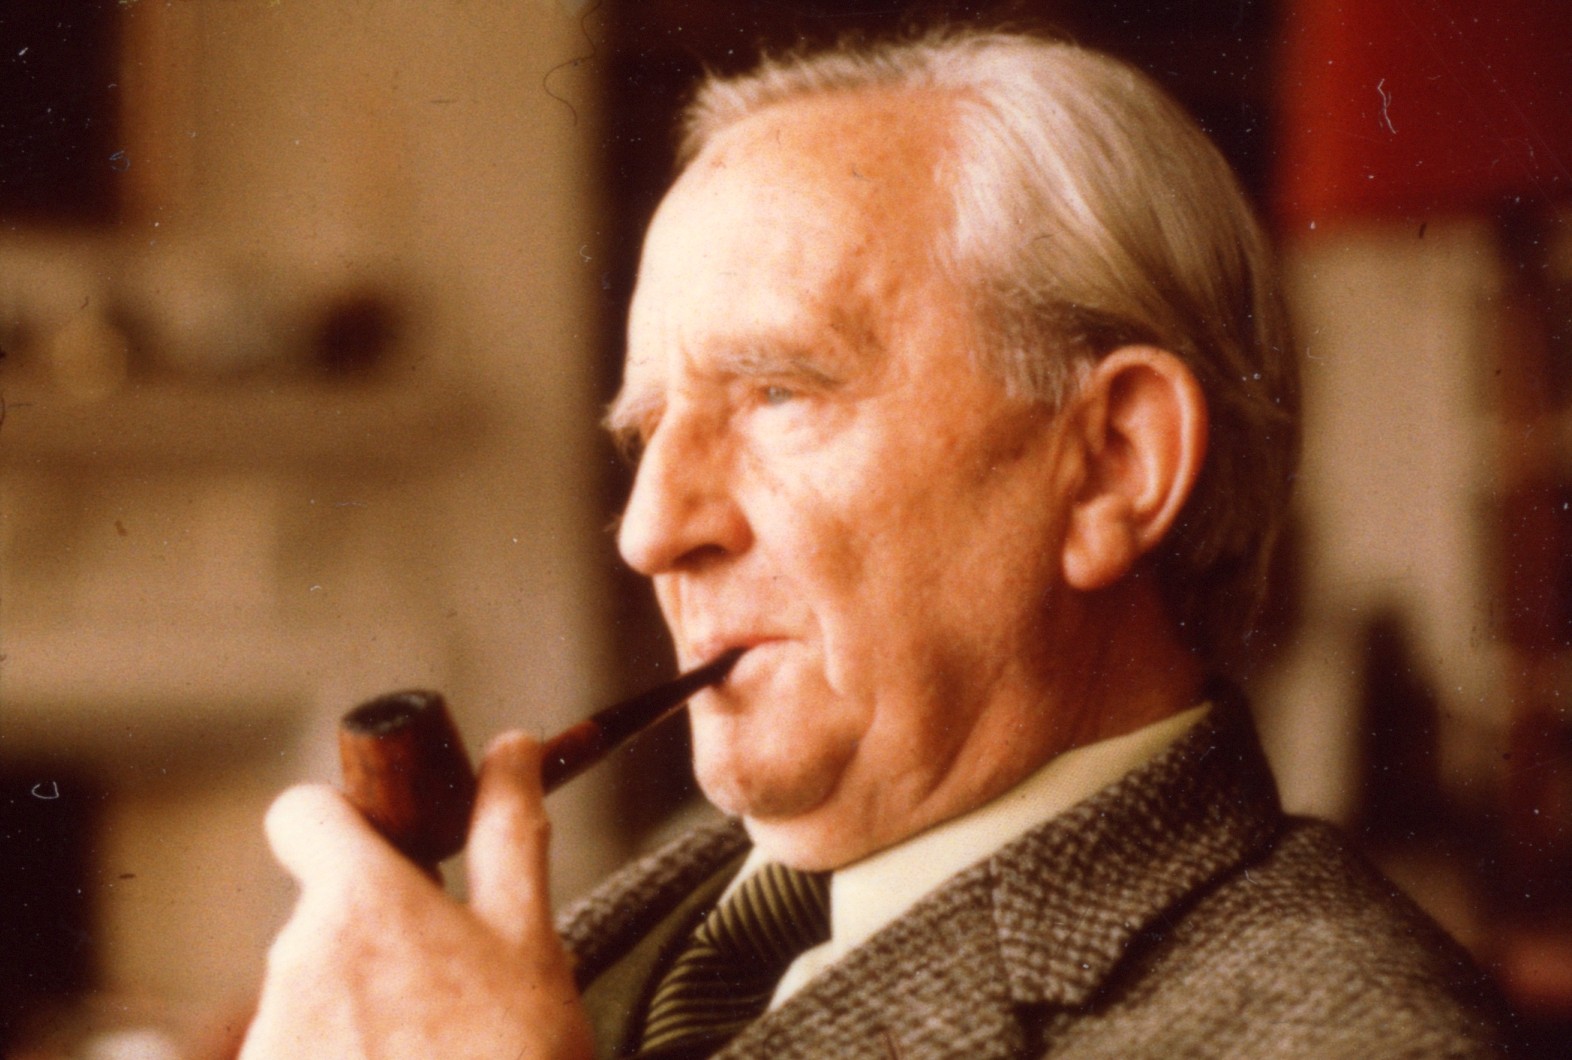 J.R.R. Tolkien - dlaczego nie dostał Nobla? 